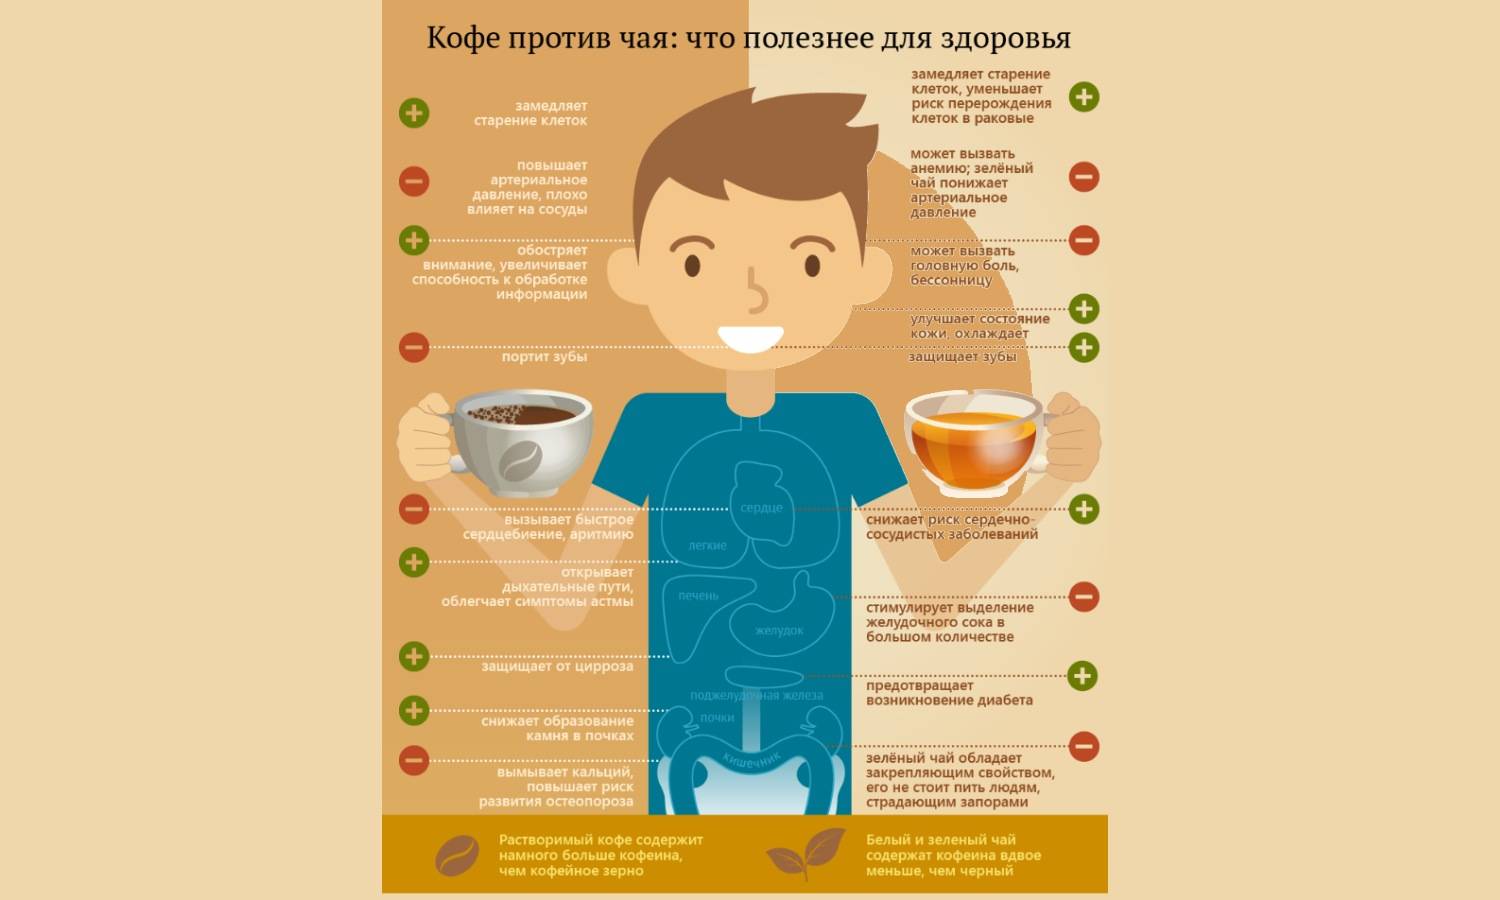 Питание при панкреатите поджелудочной железы - меню и советы от диетолога